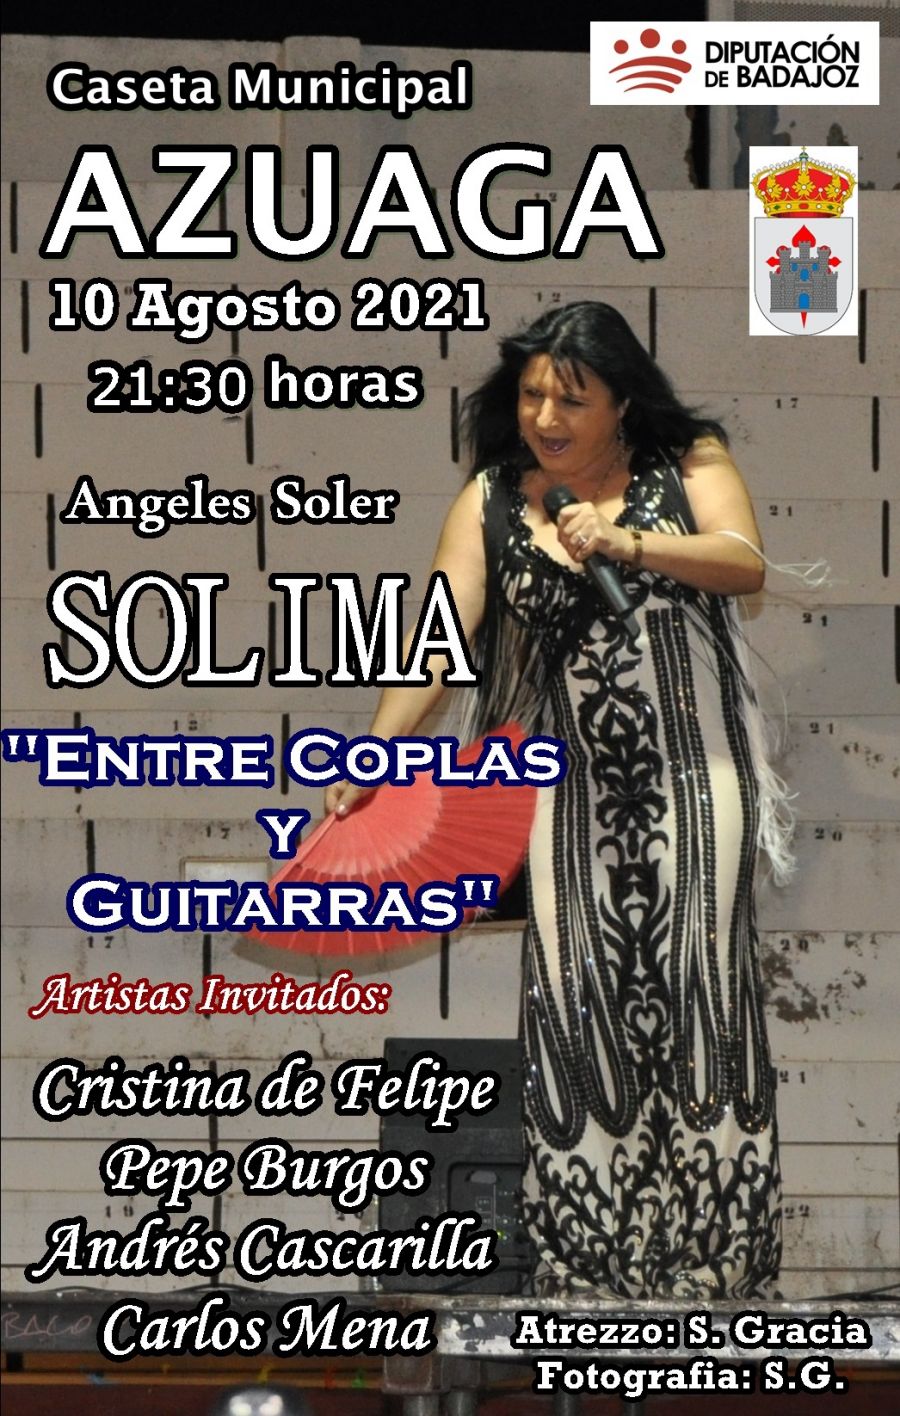 Angeles Soler 'SOLIMA' en concierto en AZUAGA (Badajoz)